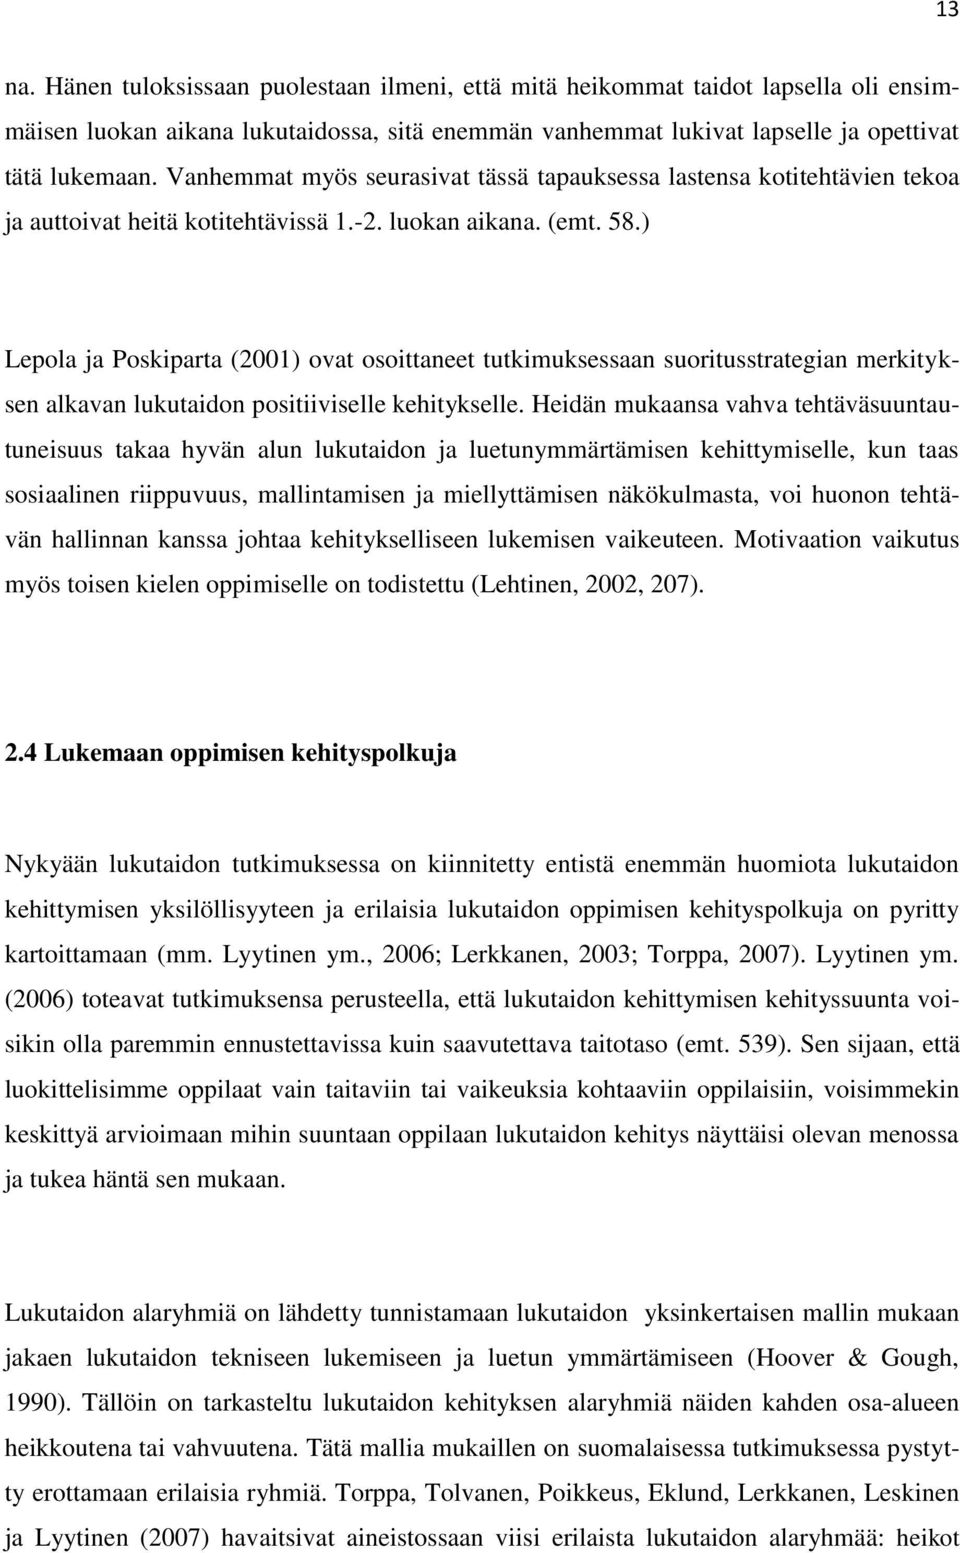 ) Lepola ja Poskiparta (2001) ovat osoittaneet tutkimuksessaan suoritusstrategian merkityksen alkavan lukutaidon positiiviselle kehitykselle.